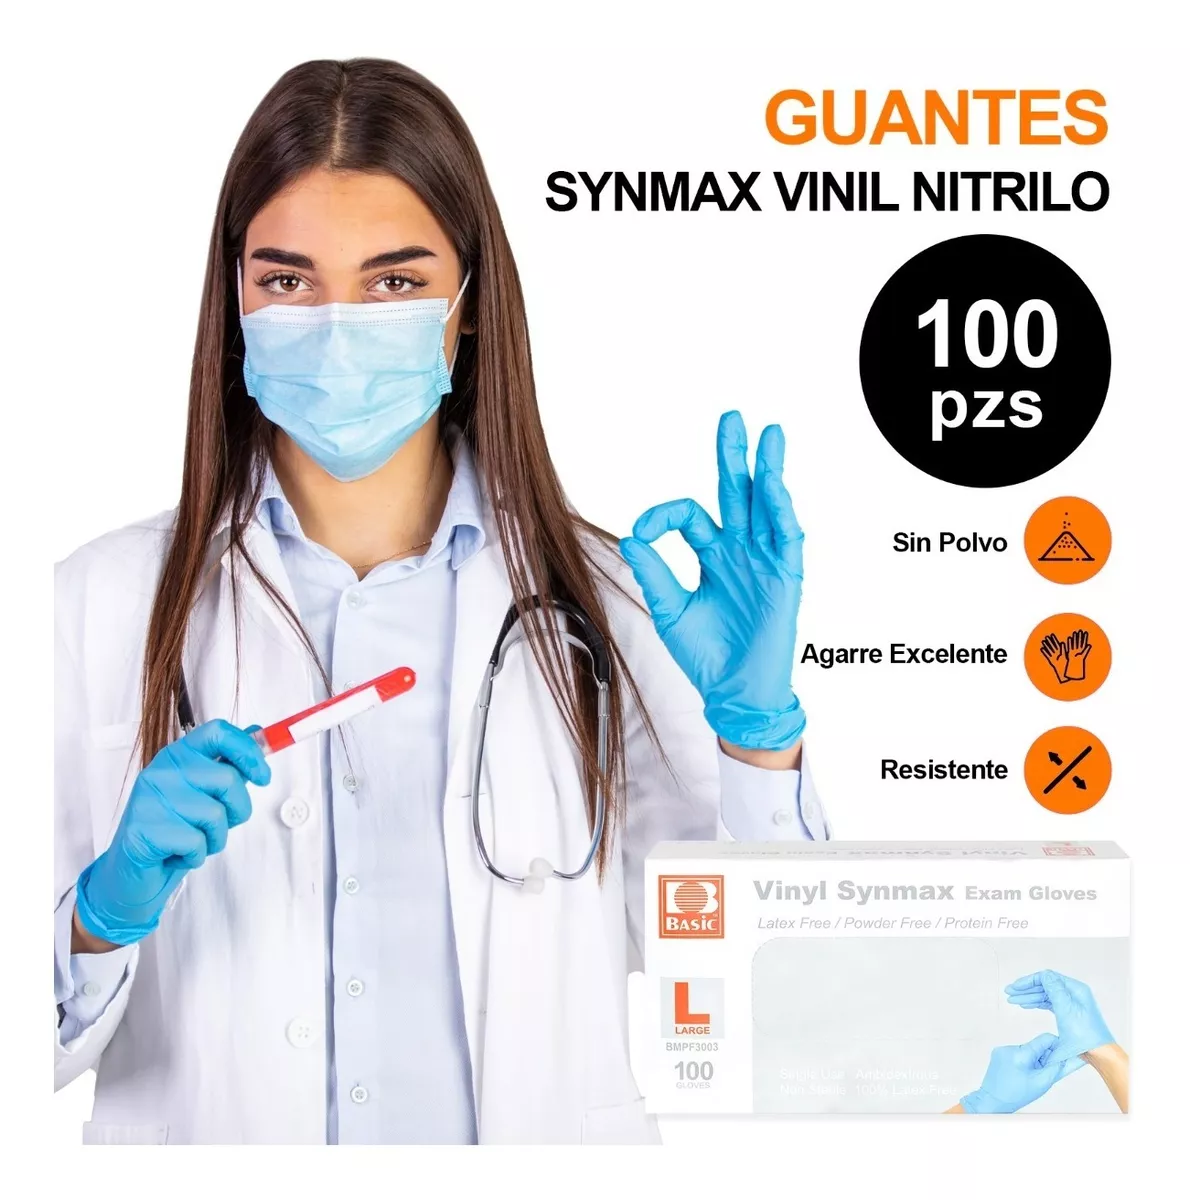 Guante Synamax Vinil Nitrilo Libre De Latex